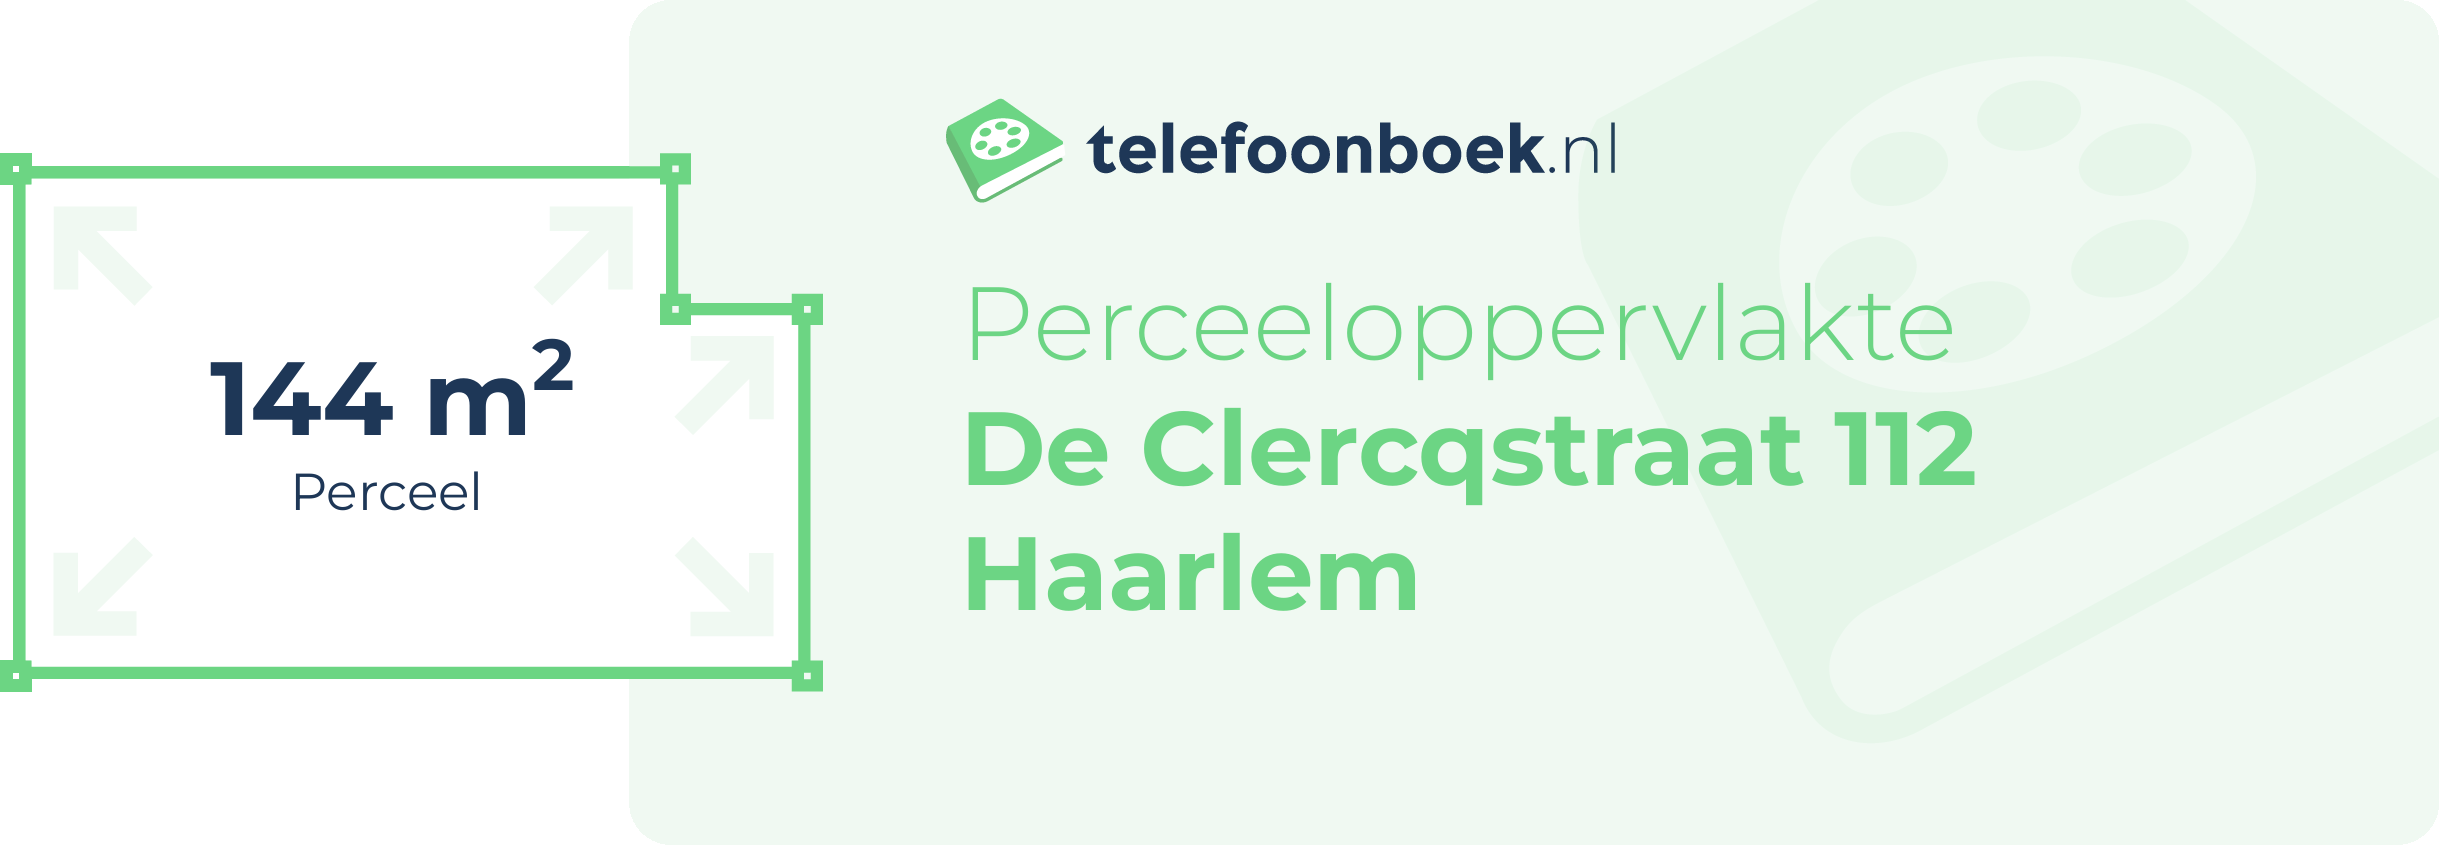 Perceeloppervlakte De Clercqstraat 112 Haarlem